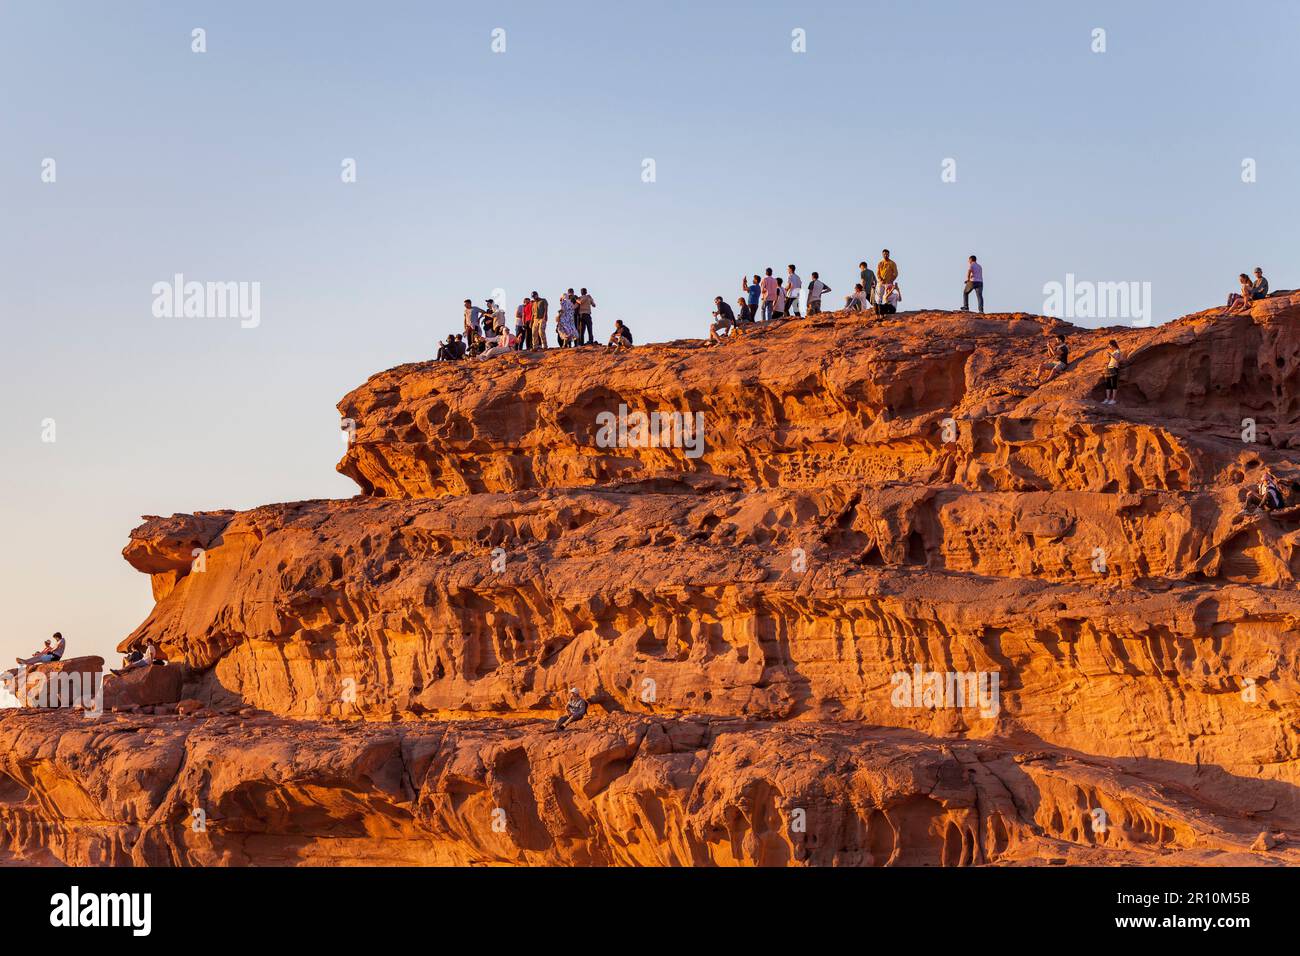 Leute, die den Sonnenuntergang von einer Sandsteinklippe aus beobachten, Wadi Rum, Jordan Stockfoto